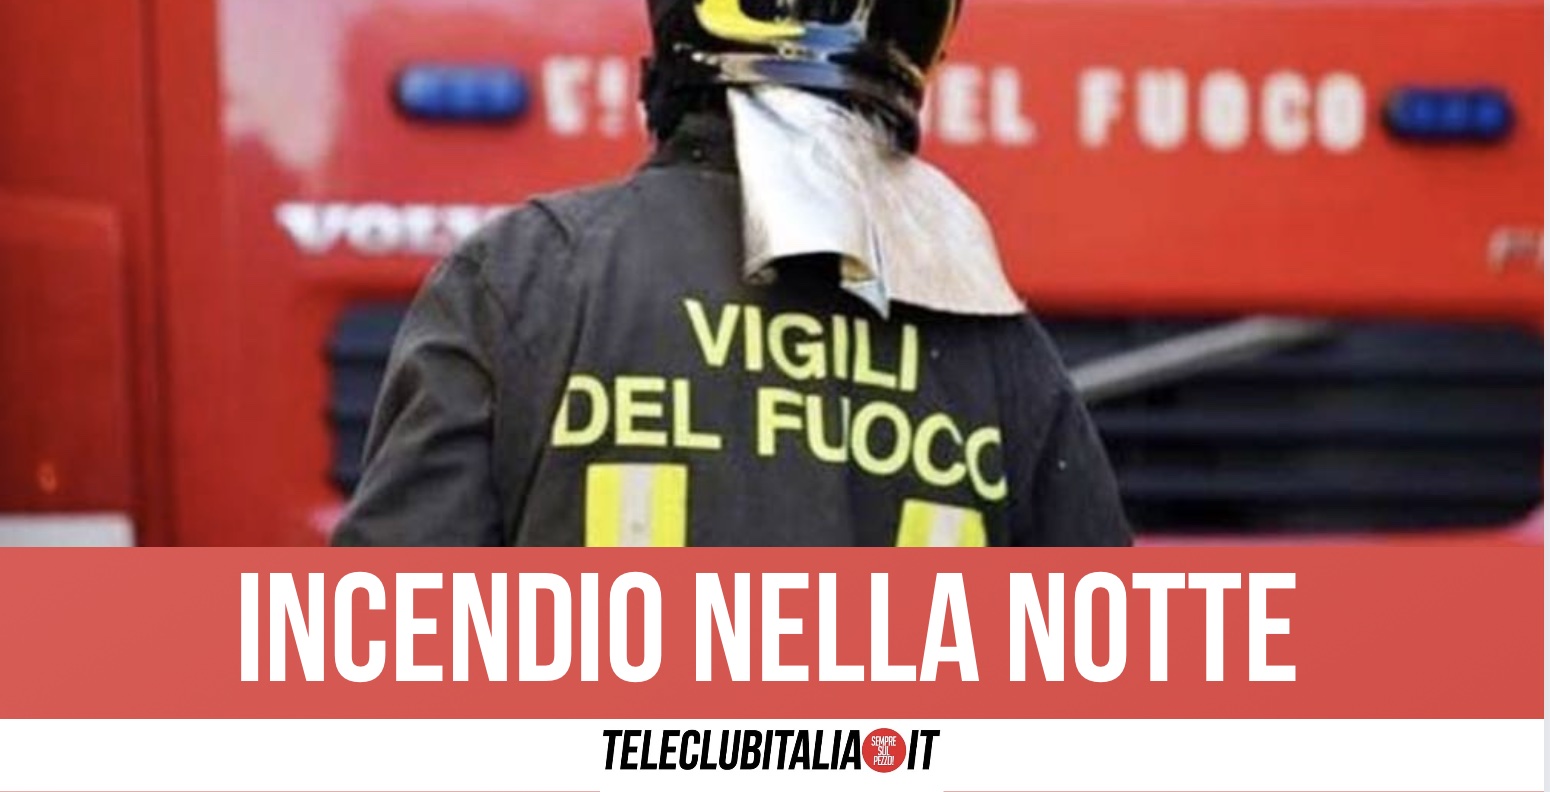 Napoli, incendio in un garage in piazza Carità: trovato il cadavere di un uomo